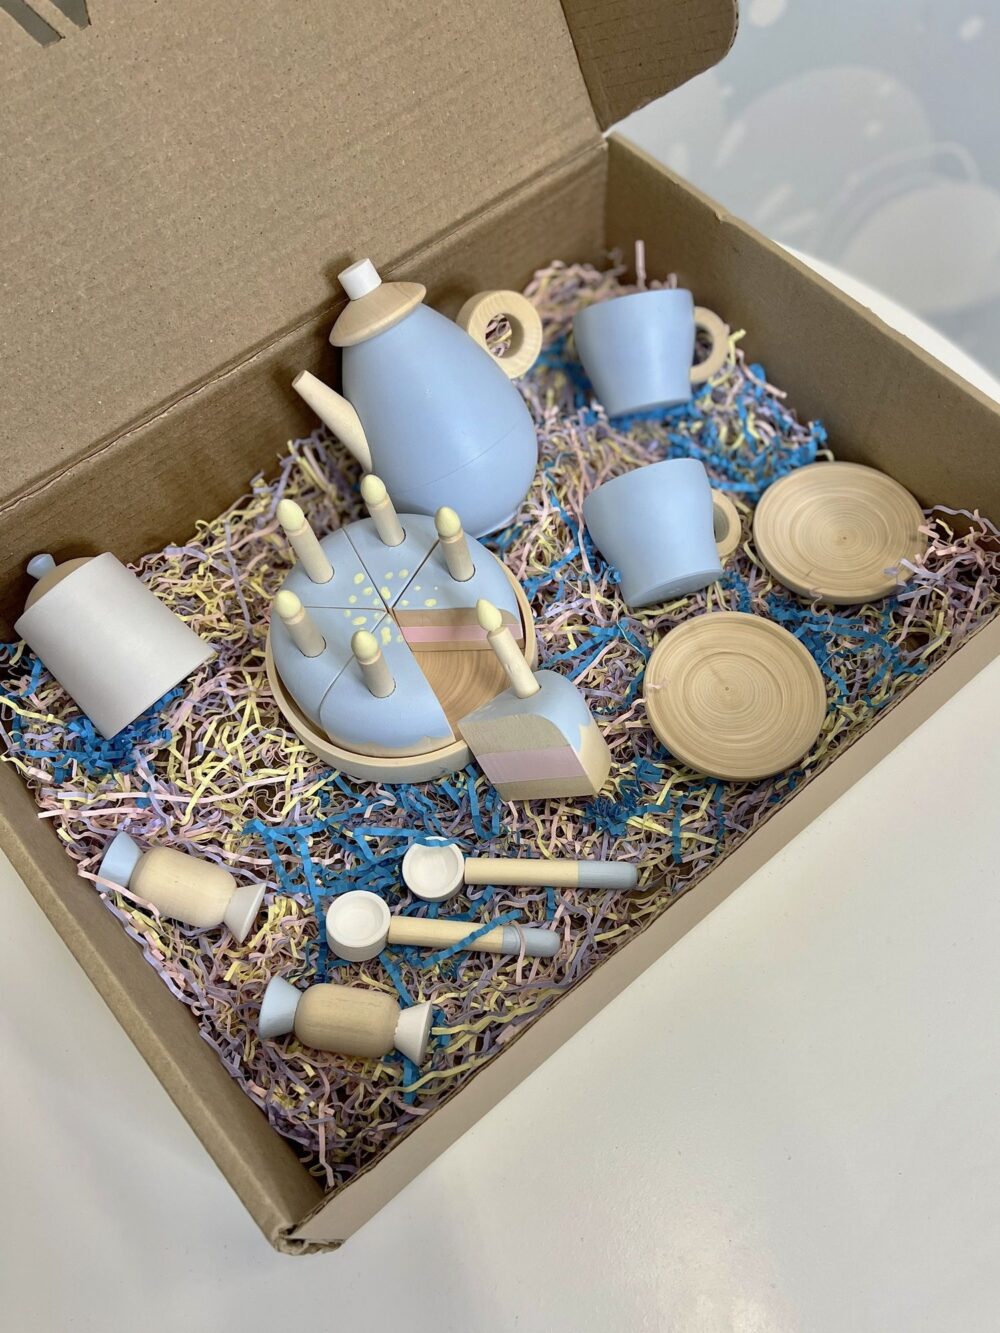 Синий чайный и кофейный детский игровой набор готовый к отправке покупателю. В комплекте игрушечный тортик